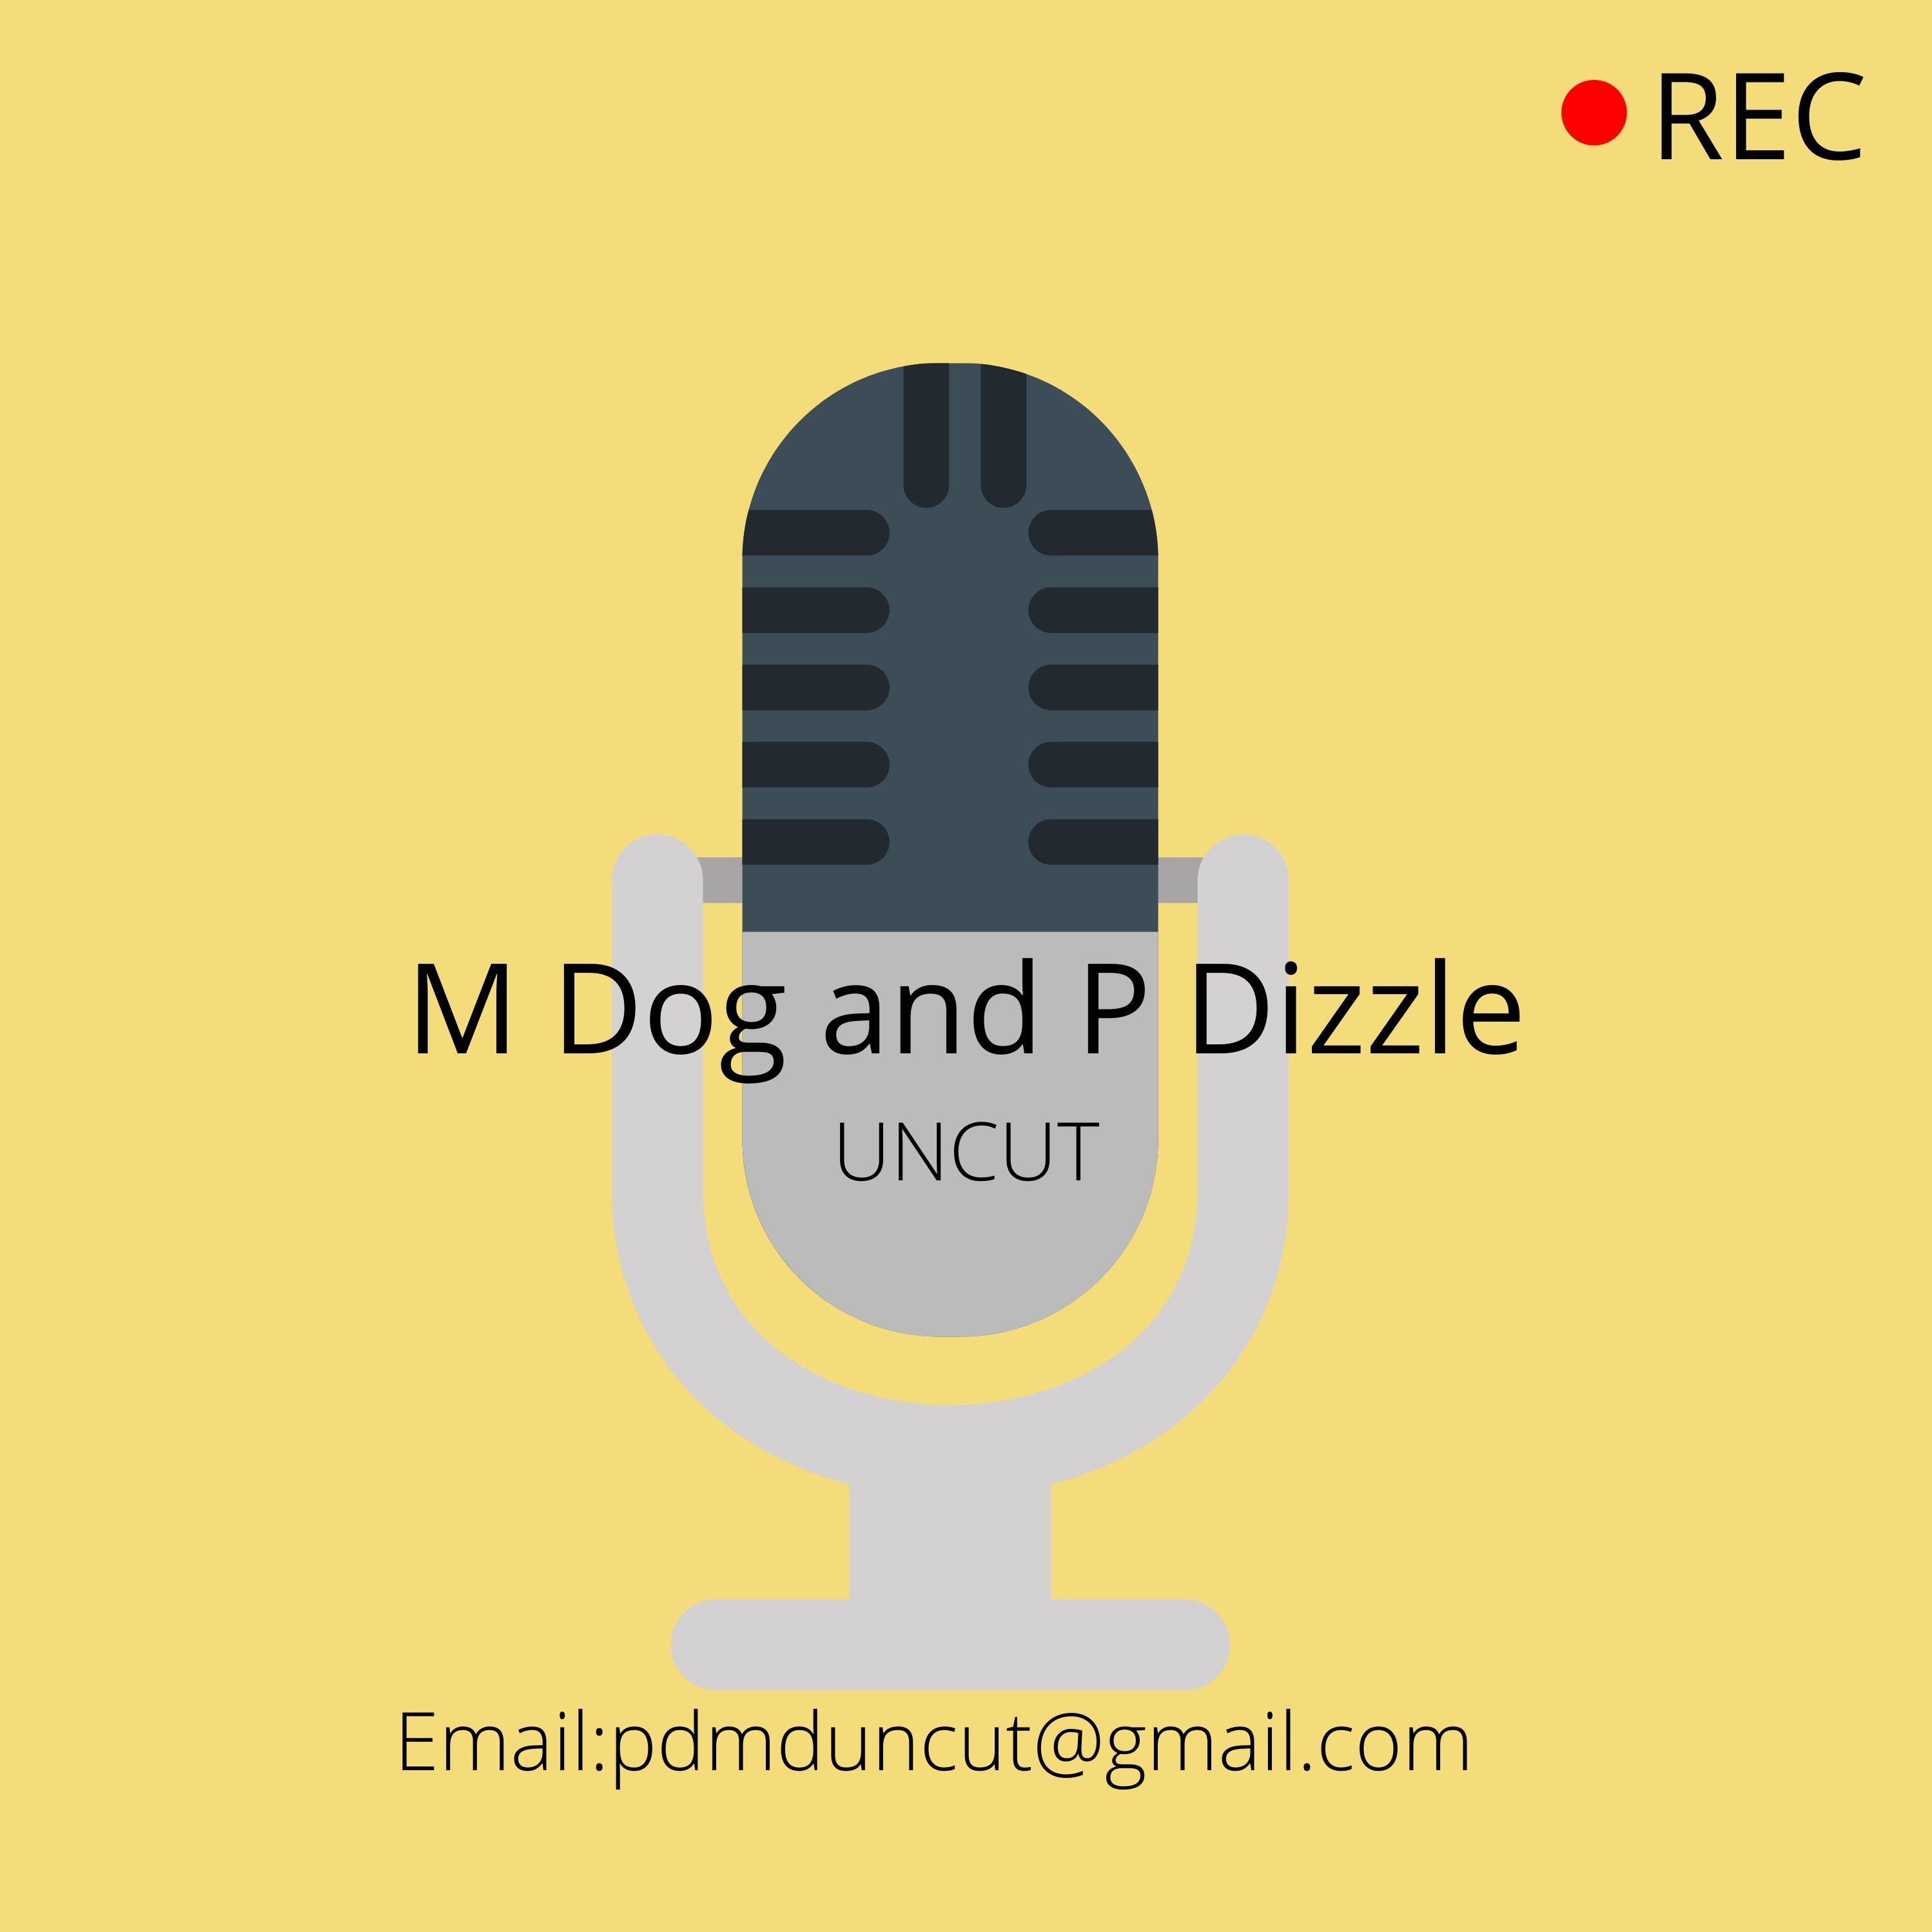 M Dog and P Dizzle UNCUT